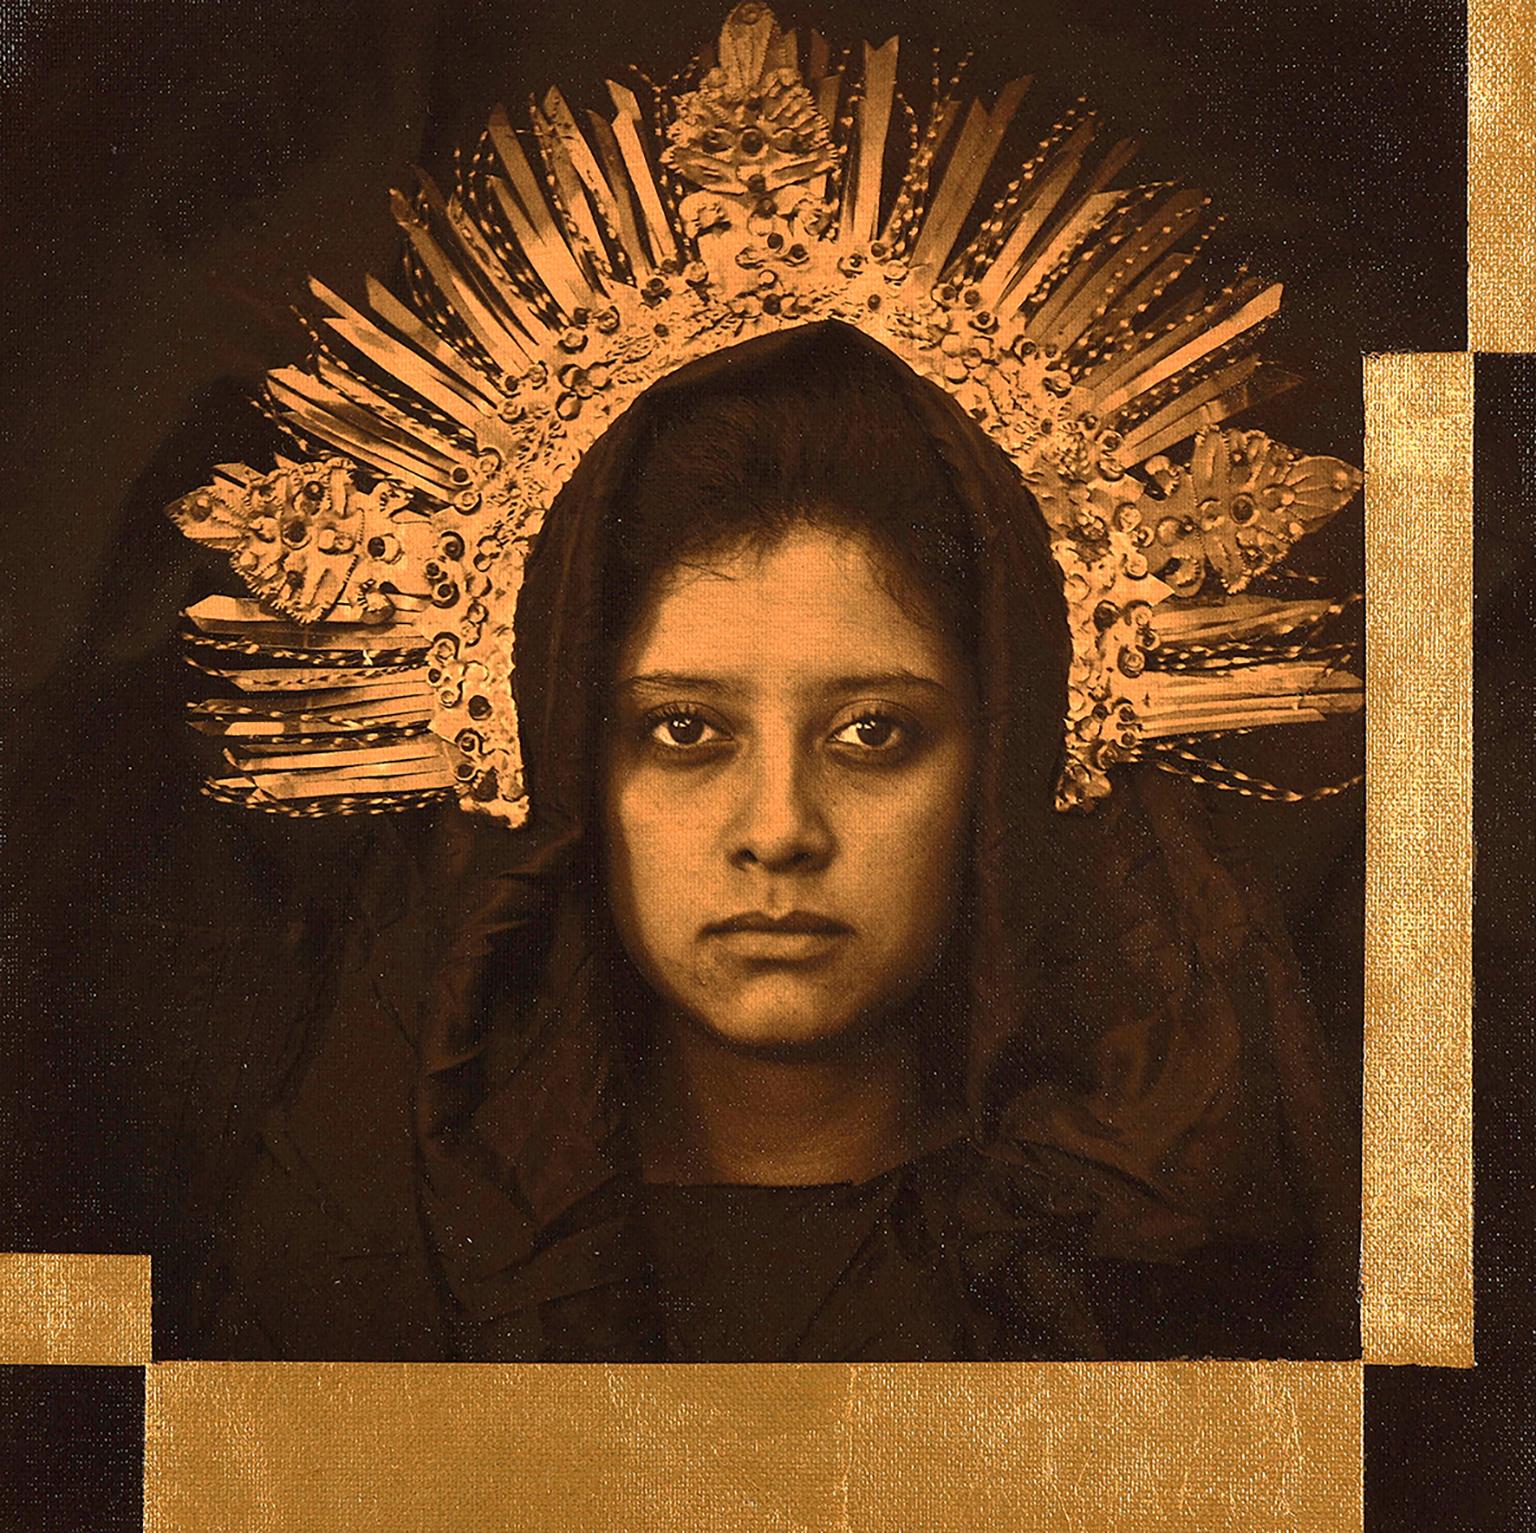 Luis Gonzalez Palma Portrait Photograph - "Mobius (Virginal)" - photograph portrait, woman with crown